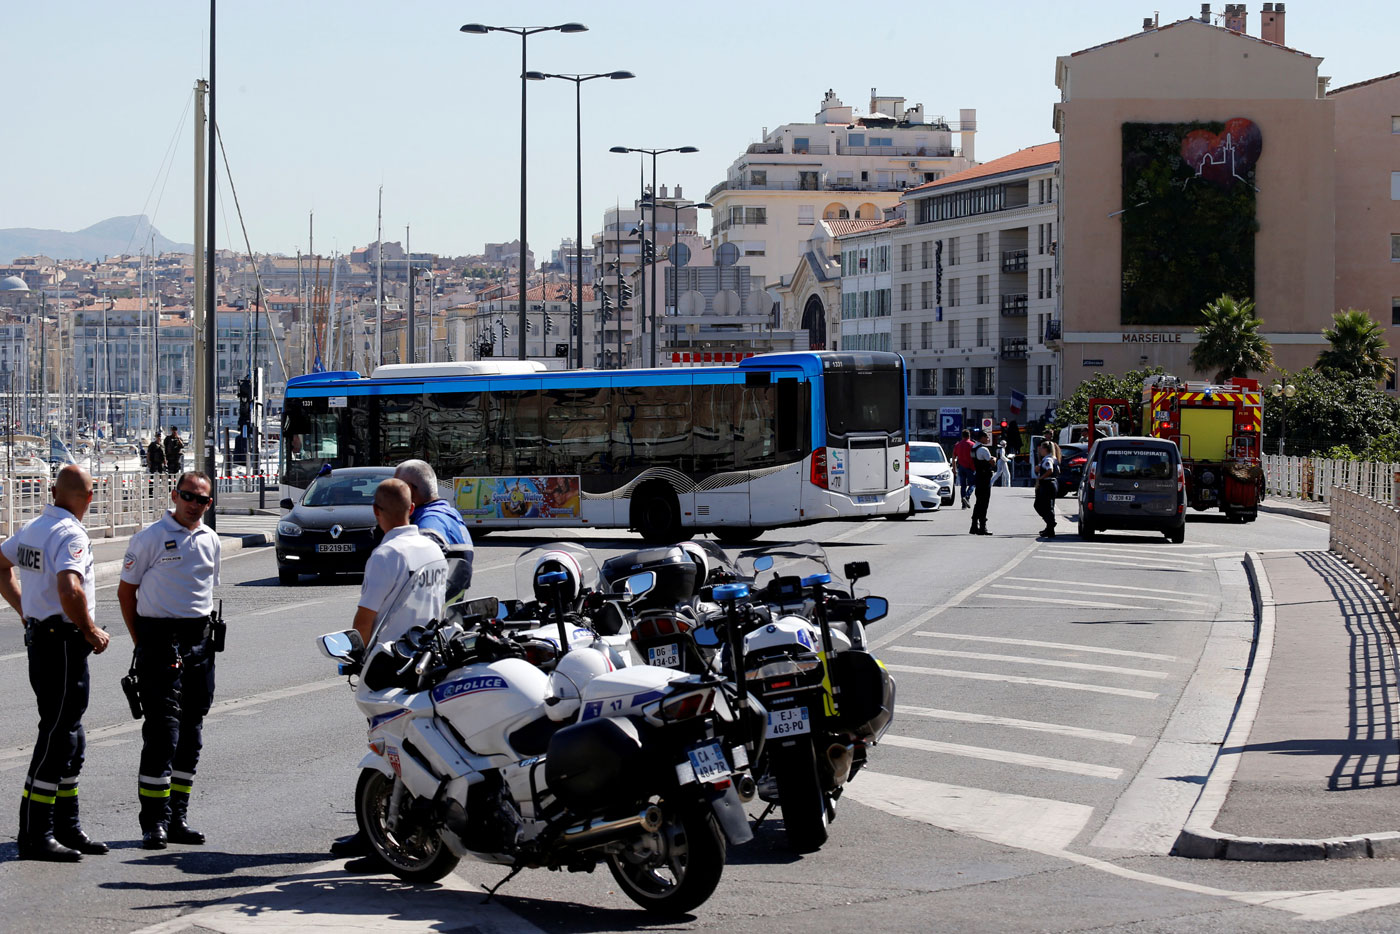 Un vehículo embiste dos paradas de autobús en Marsella, un muerto